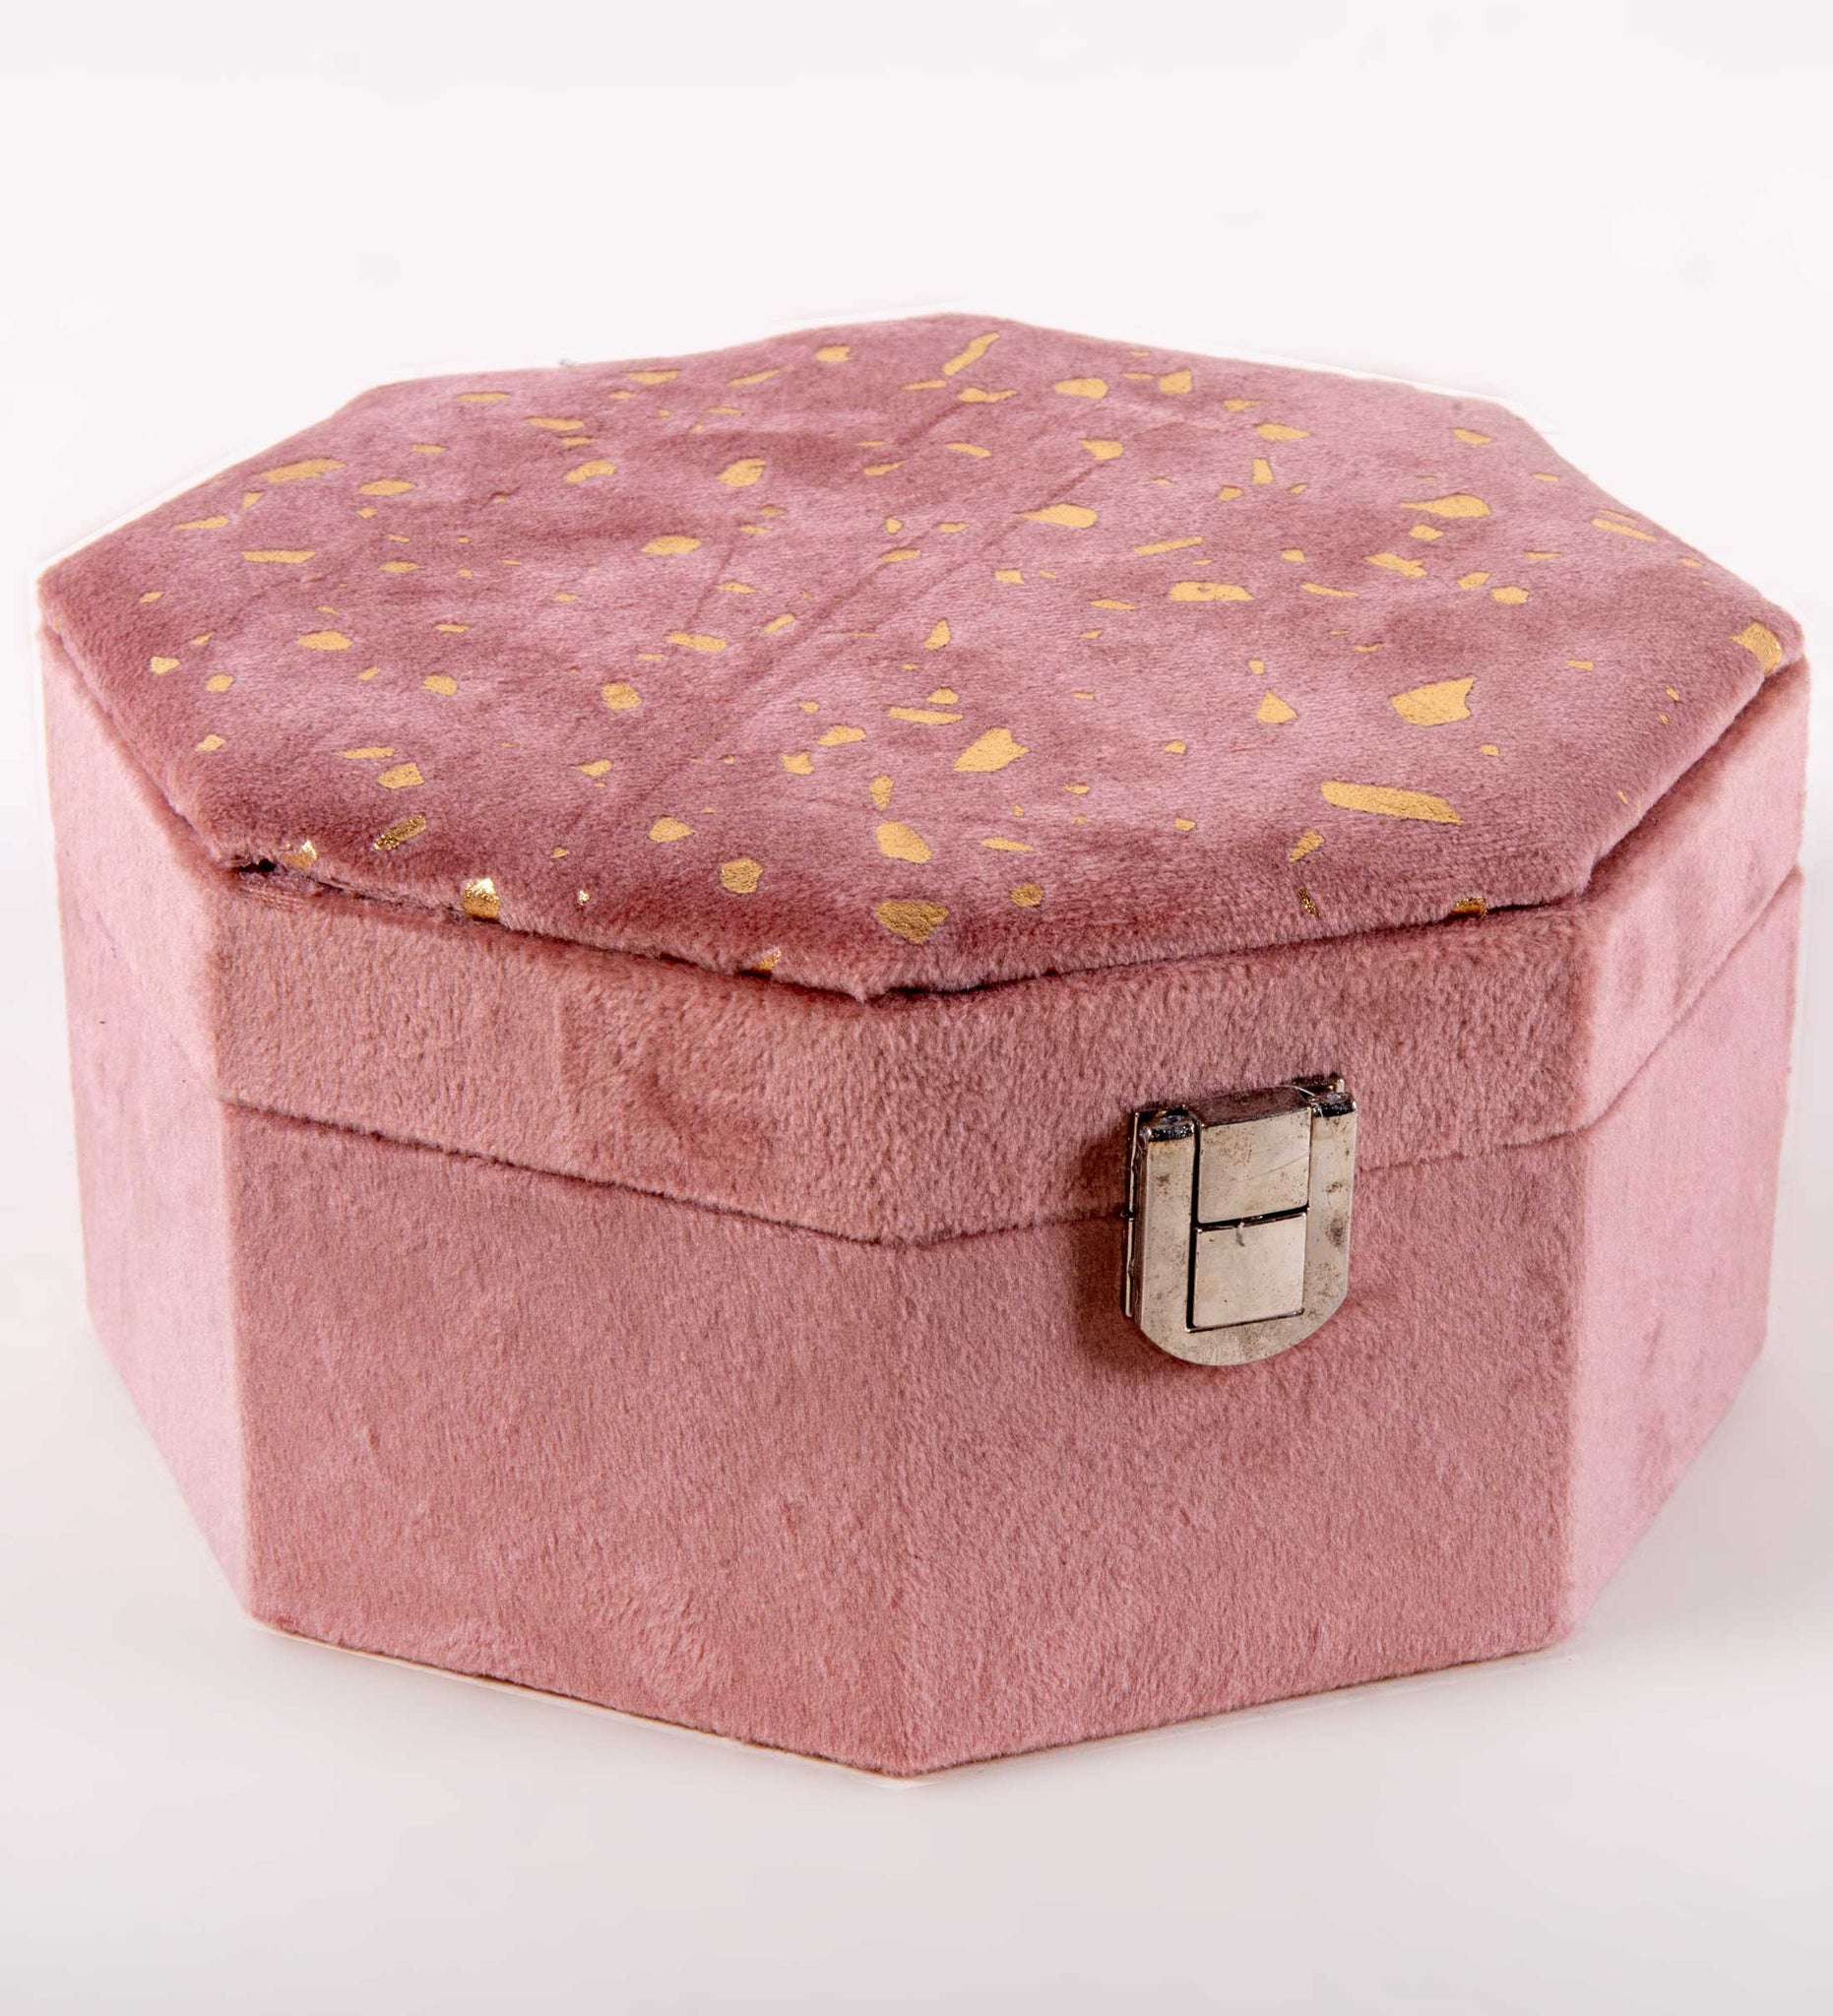 Caja oct 16*7.5*16 terc rosa pintitas dorada